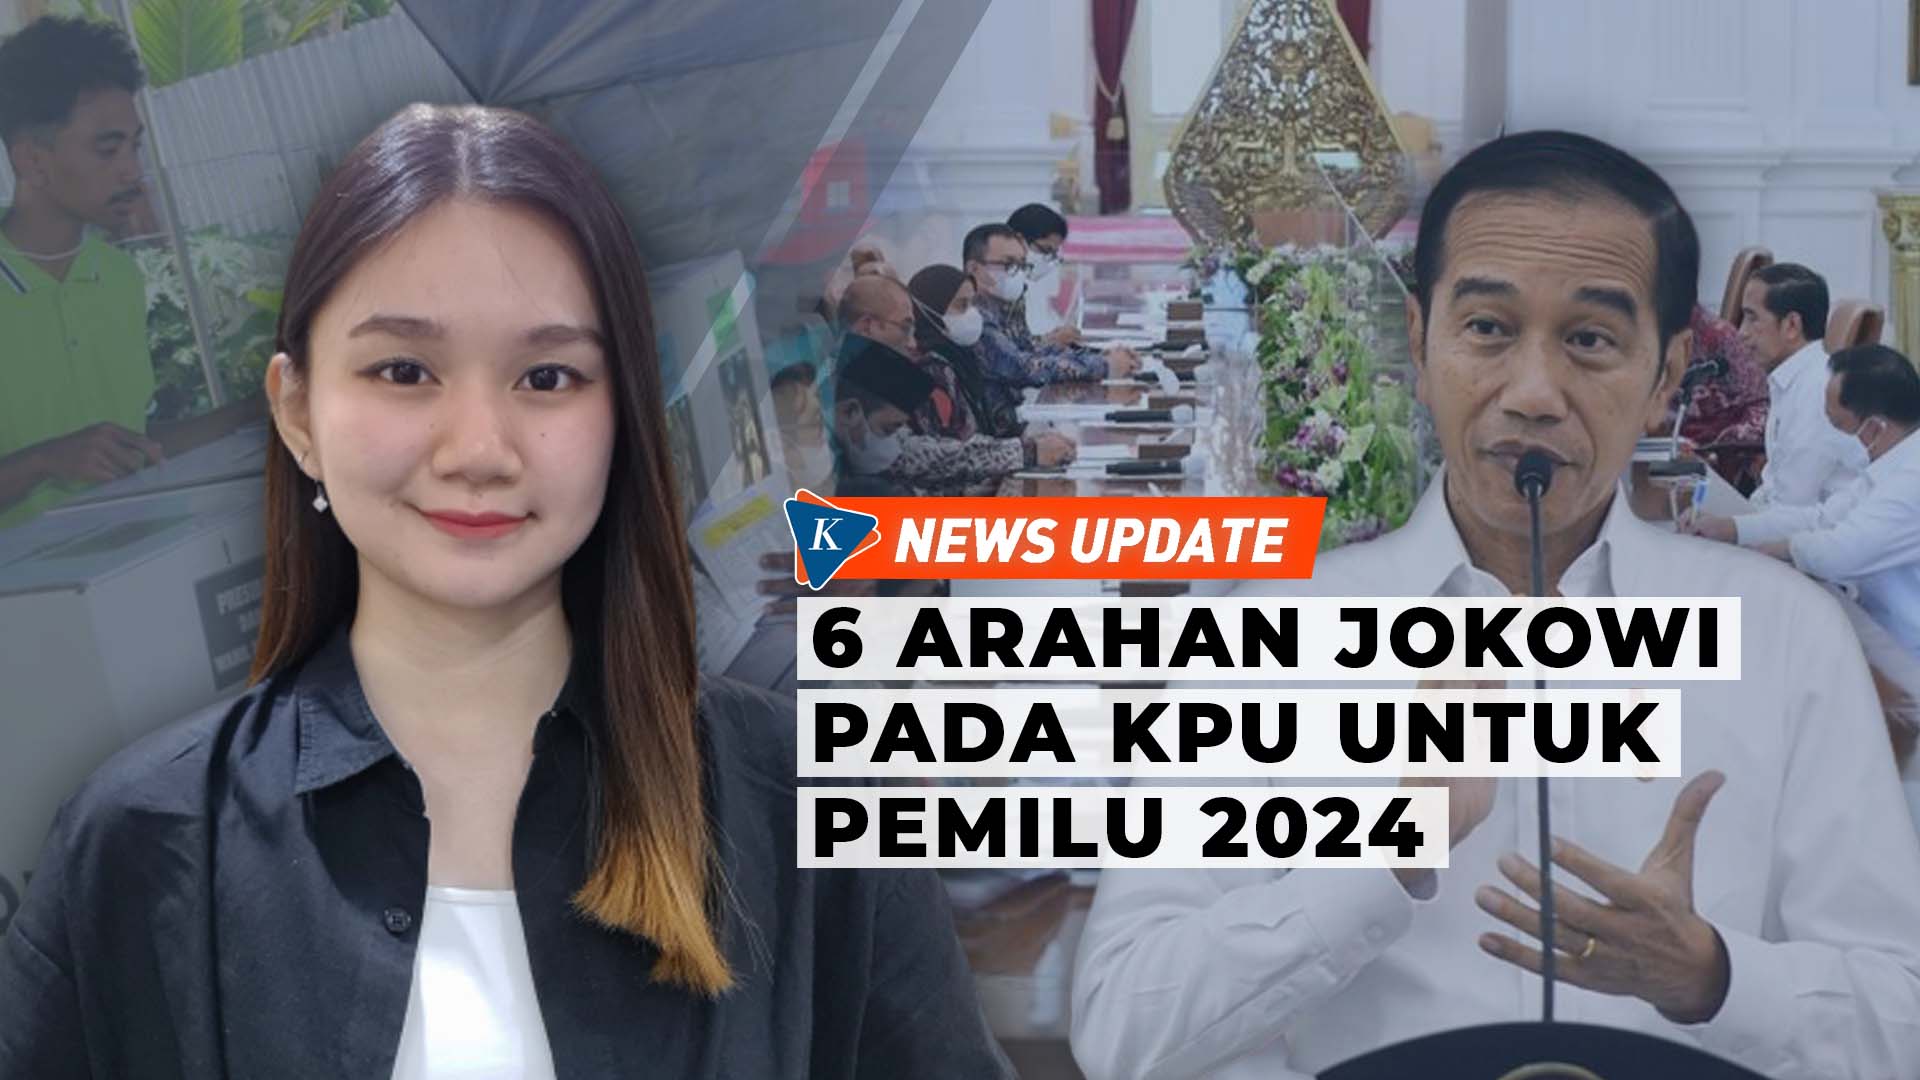 Tahapan Pemilu 2024 Dimulai 14 Juni 2022